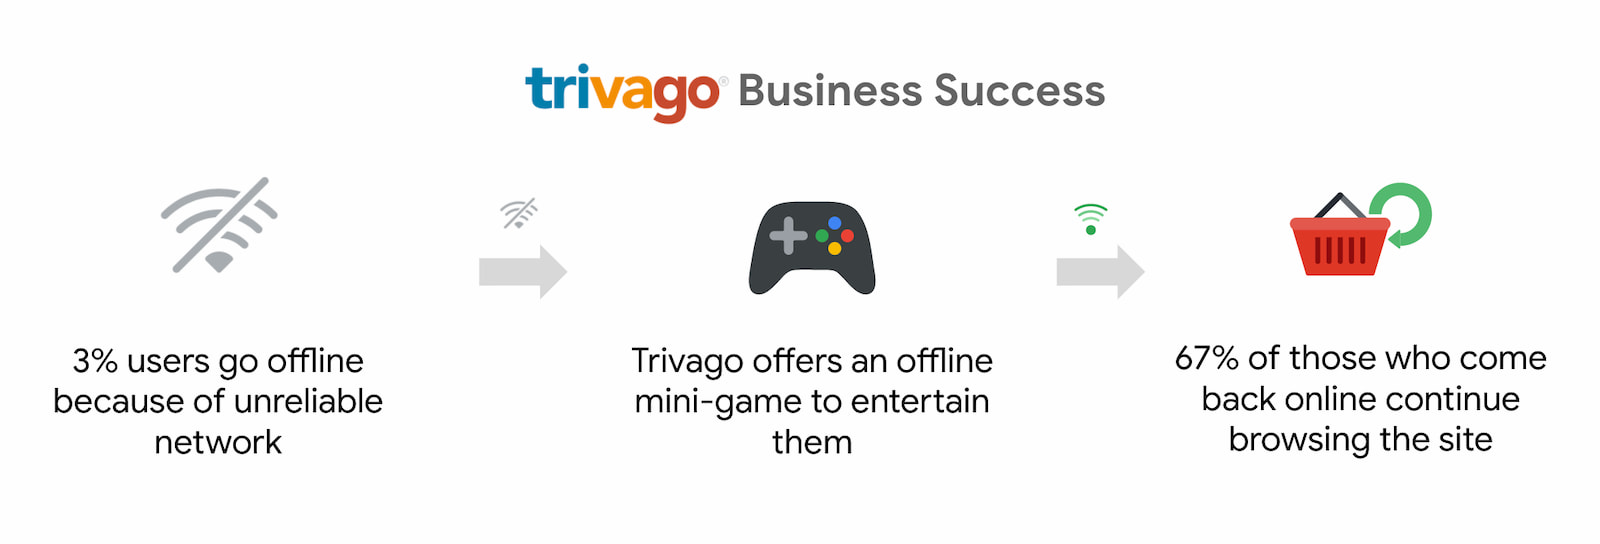 Trivago พบว่าผู้ใช้ที่กลับมาออนไลน์และท่องเว็บต่อมีจำนวนเพิ่มขึ้น 67%